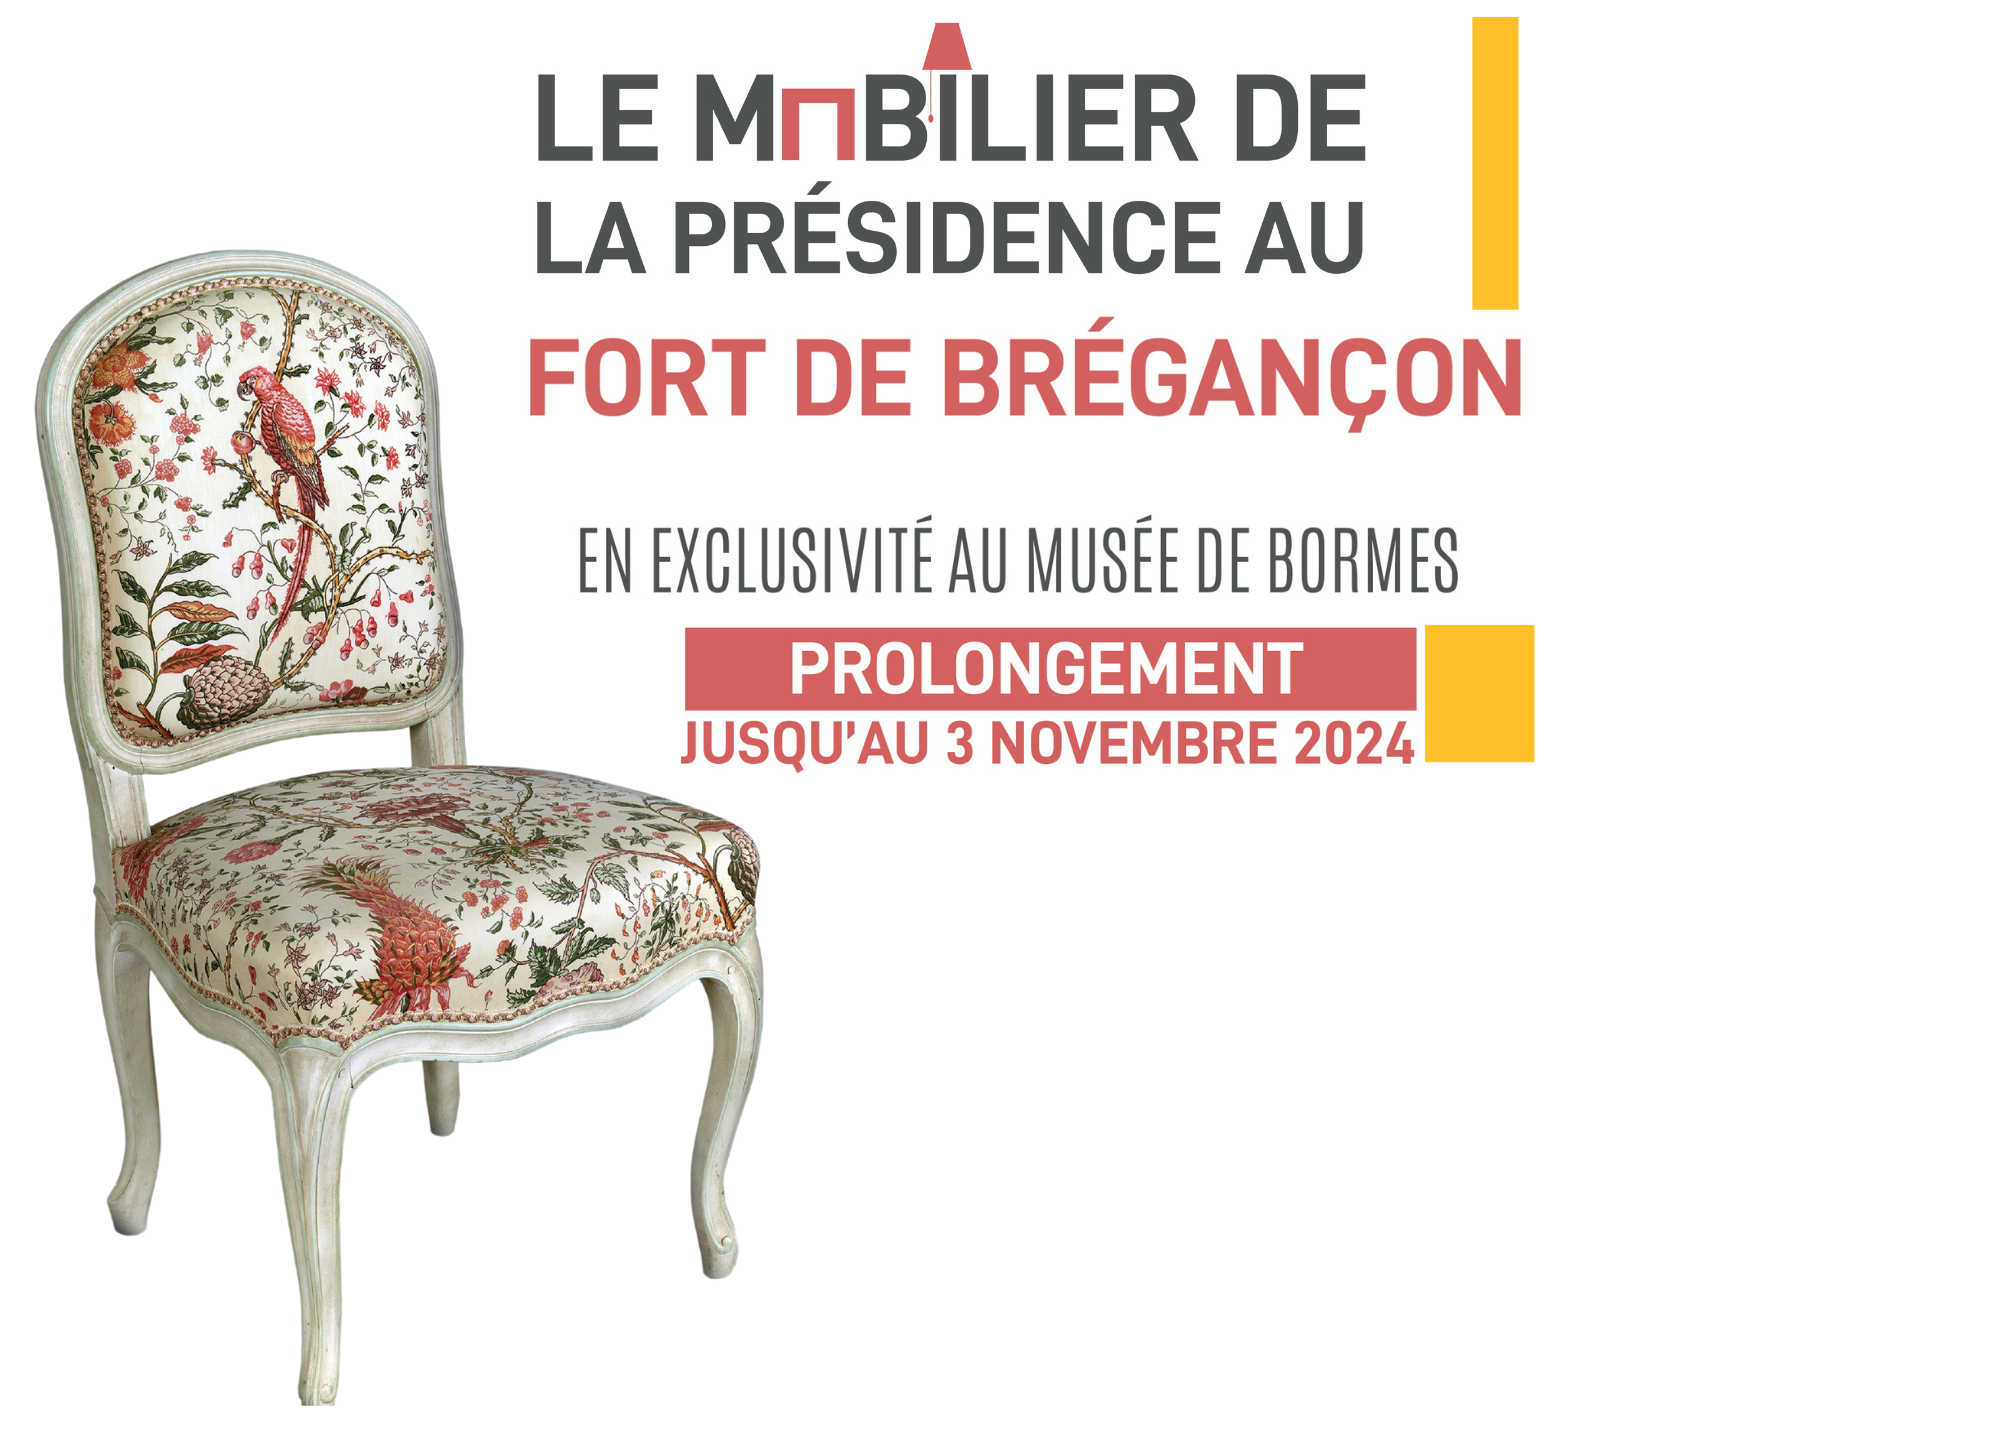 Le mobilier de la Présidence au Fort de Brégançon